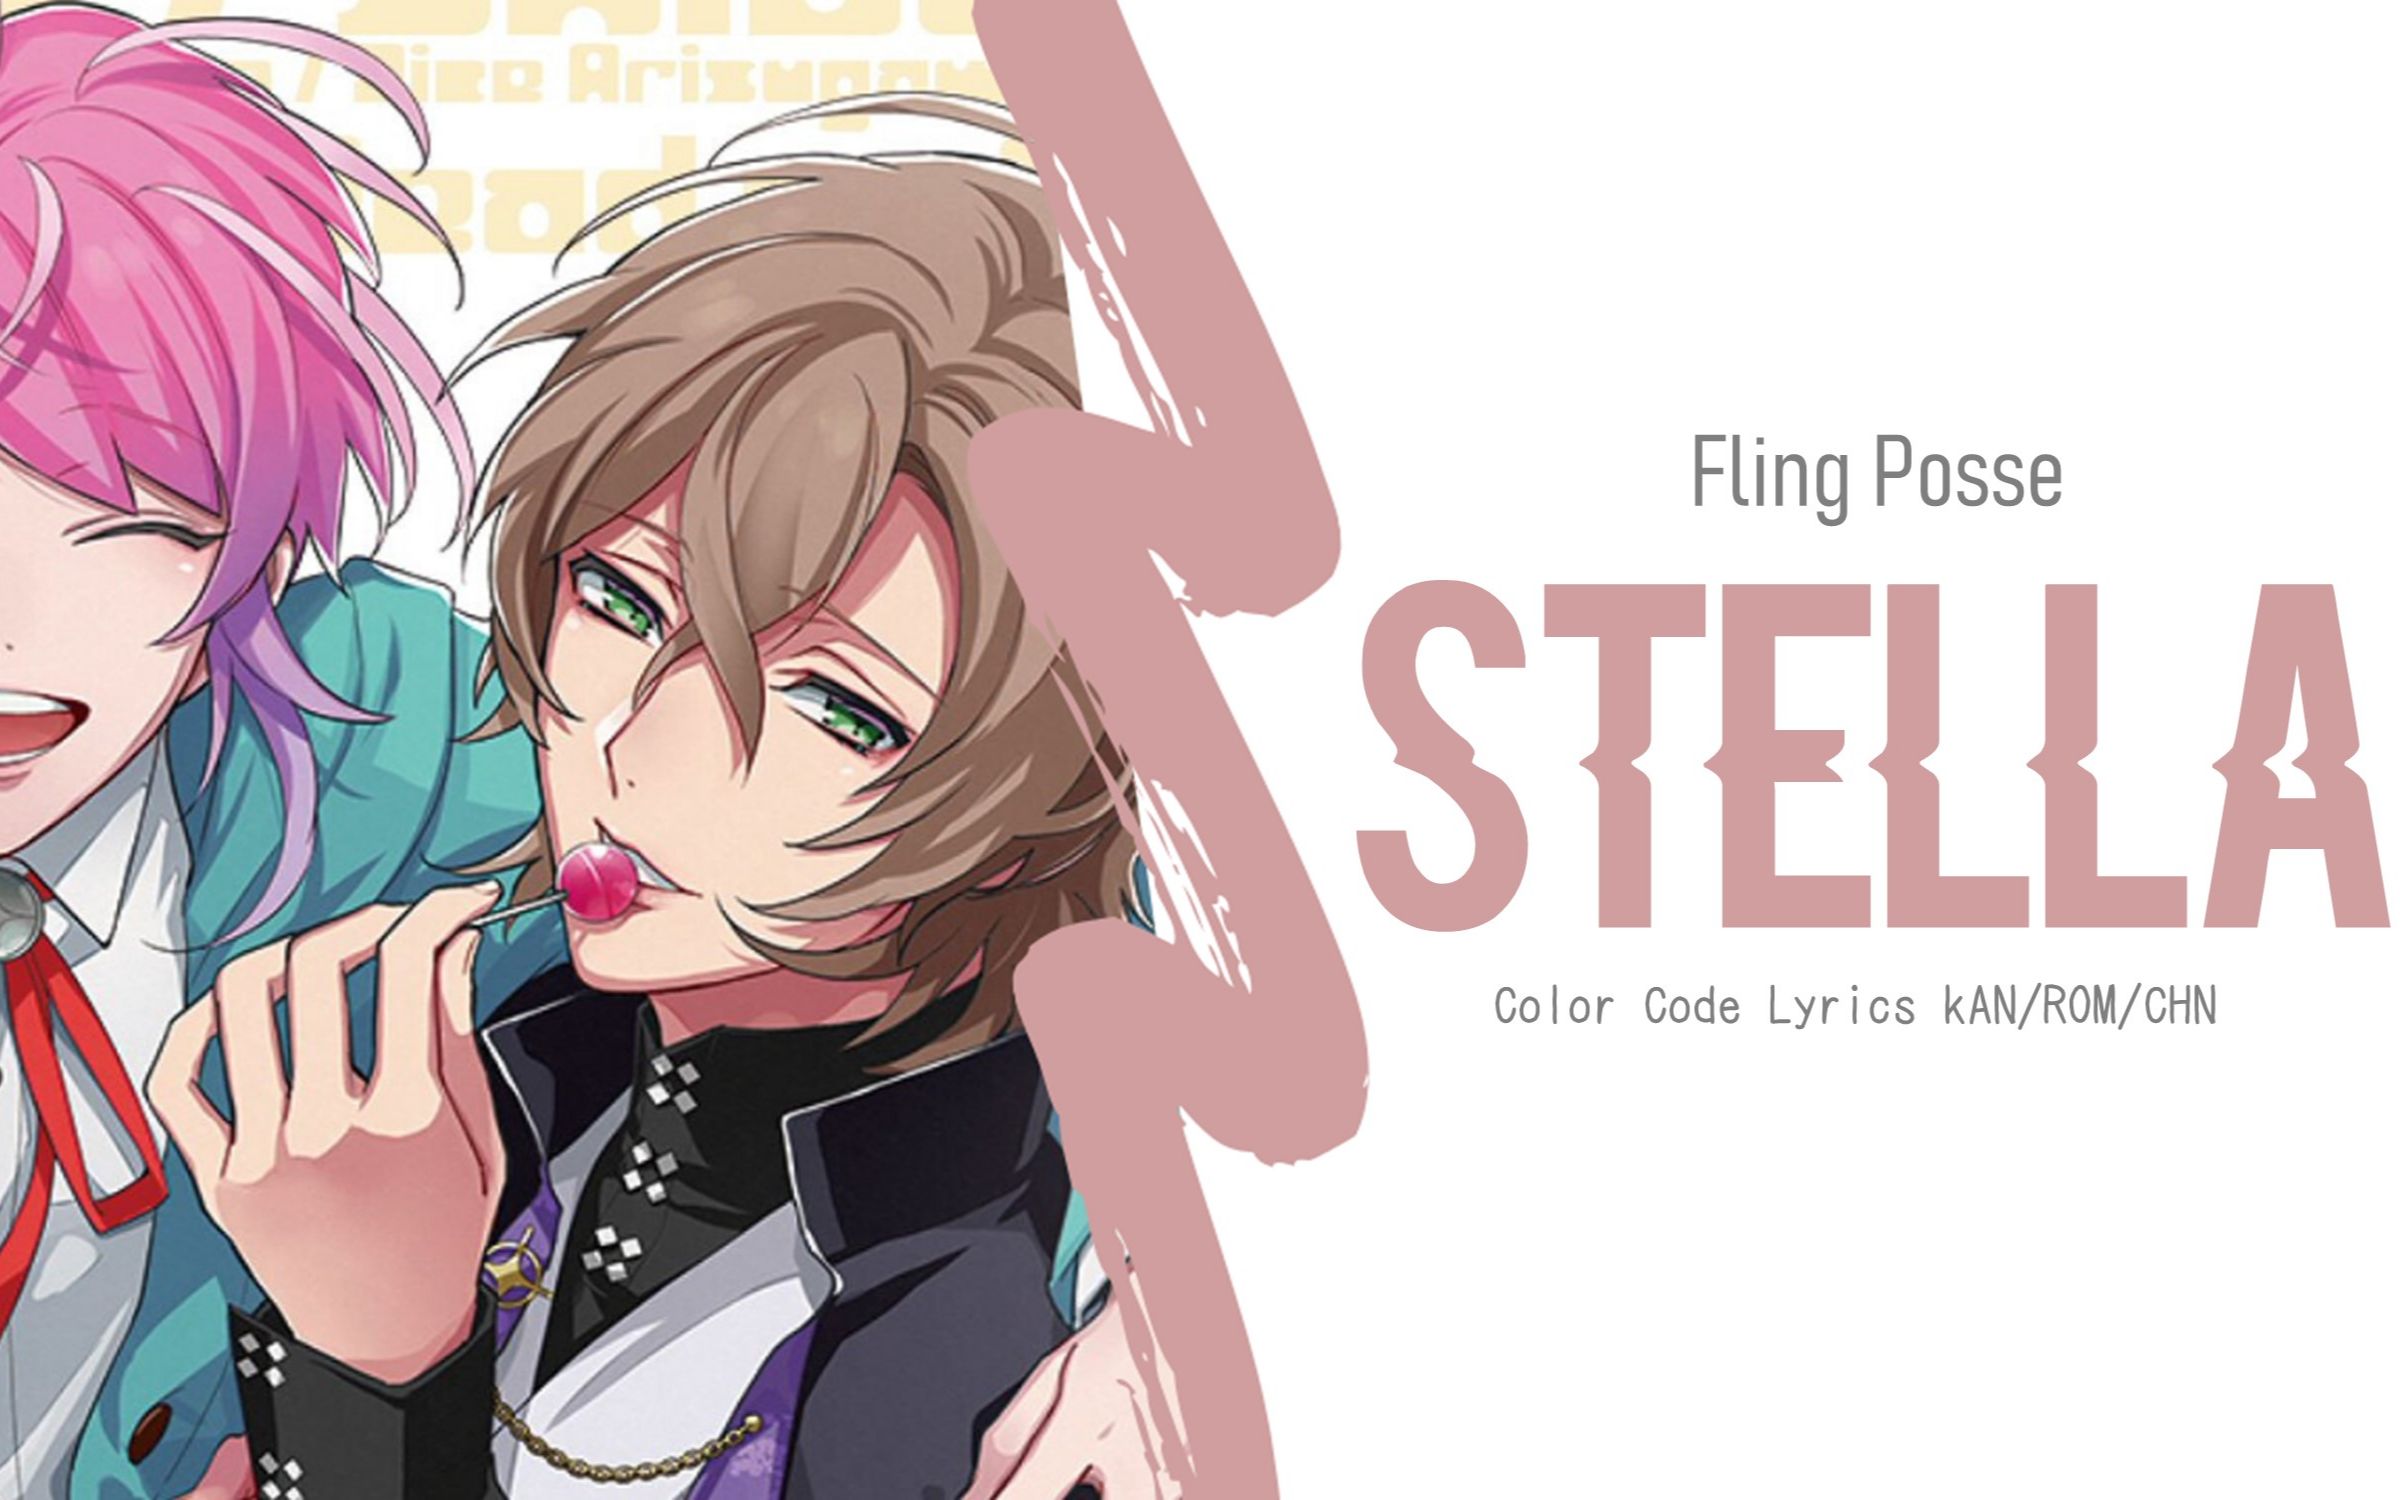 【催眠麦克风】涩谷Fling Posse - Stella(中/日/罗歌词)